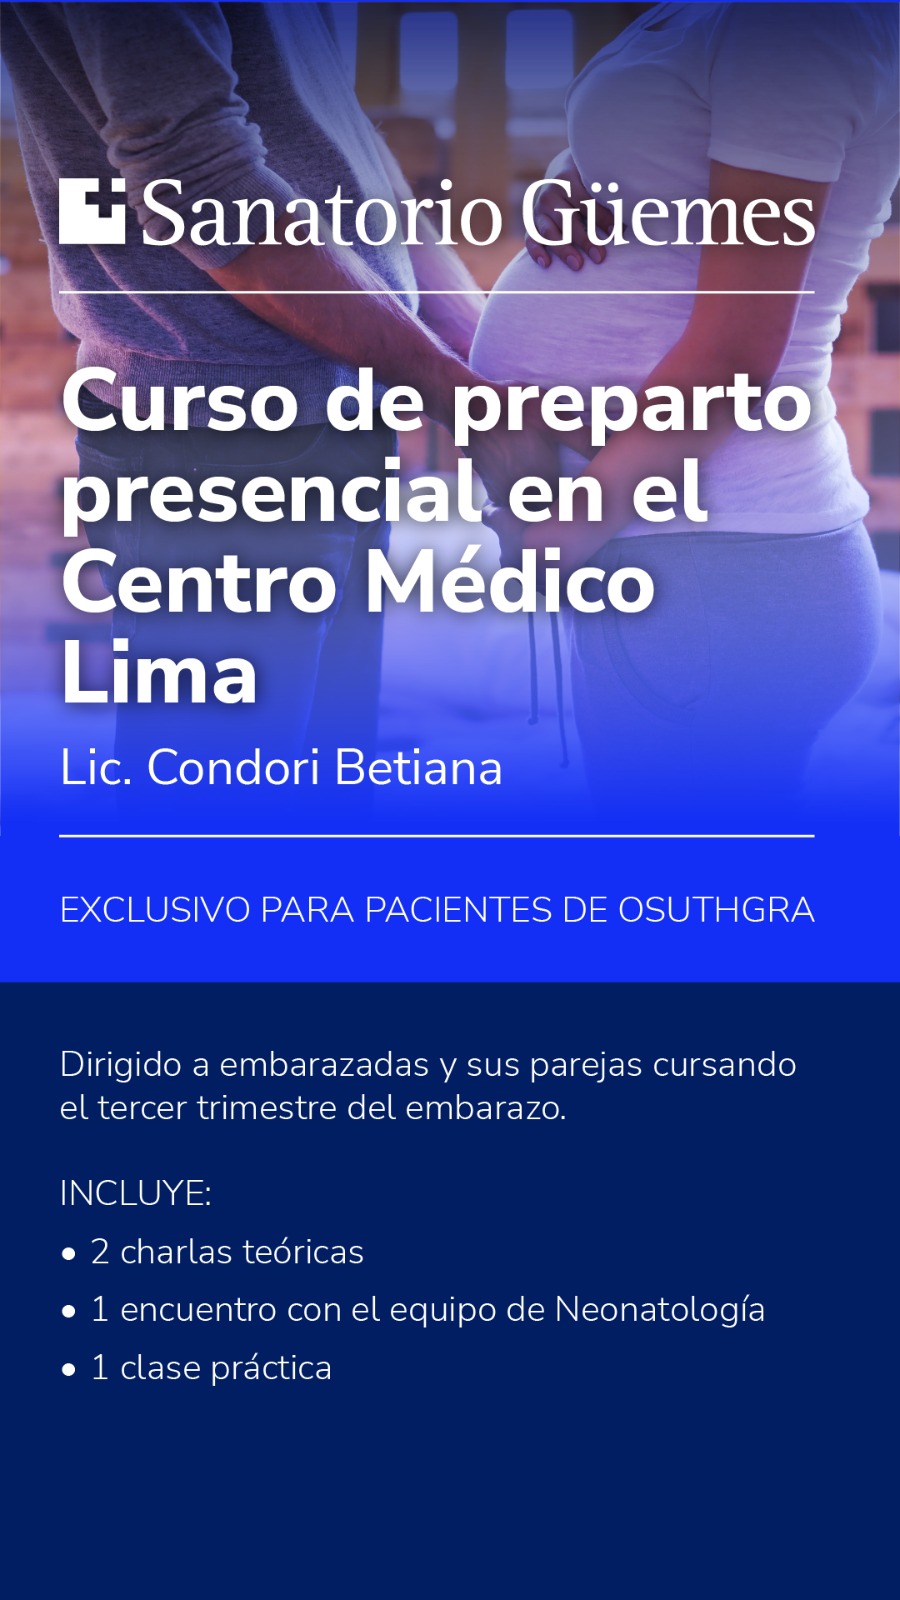 Se dictó un curso de preparto presencial en el Centro Médico Lima